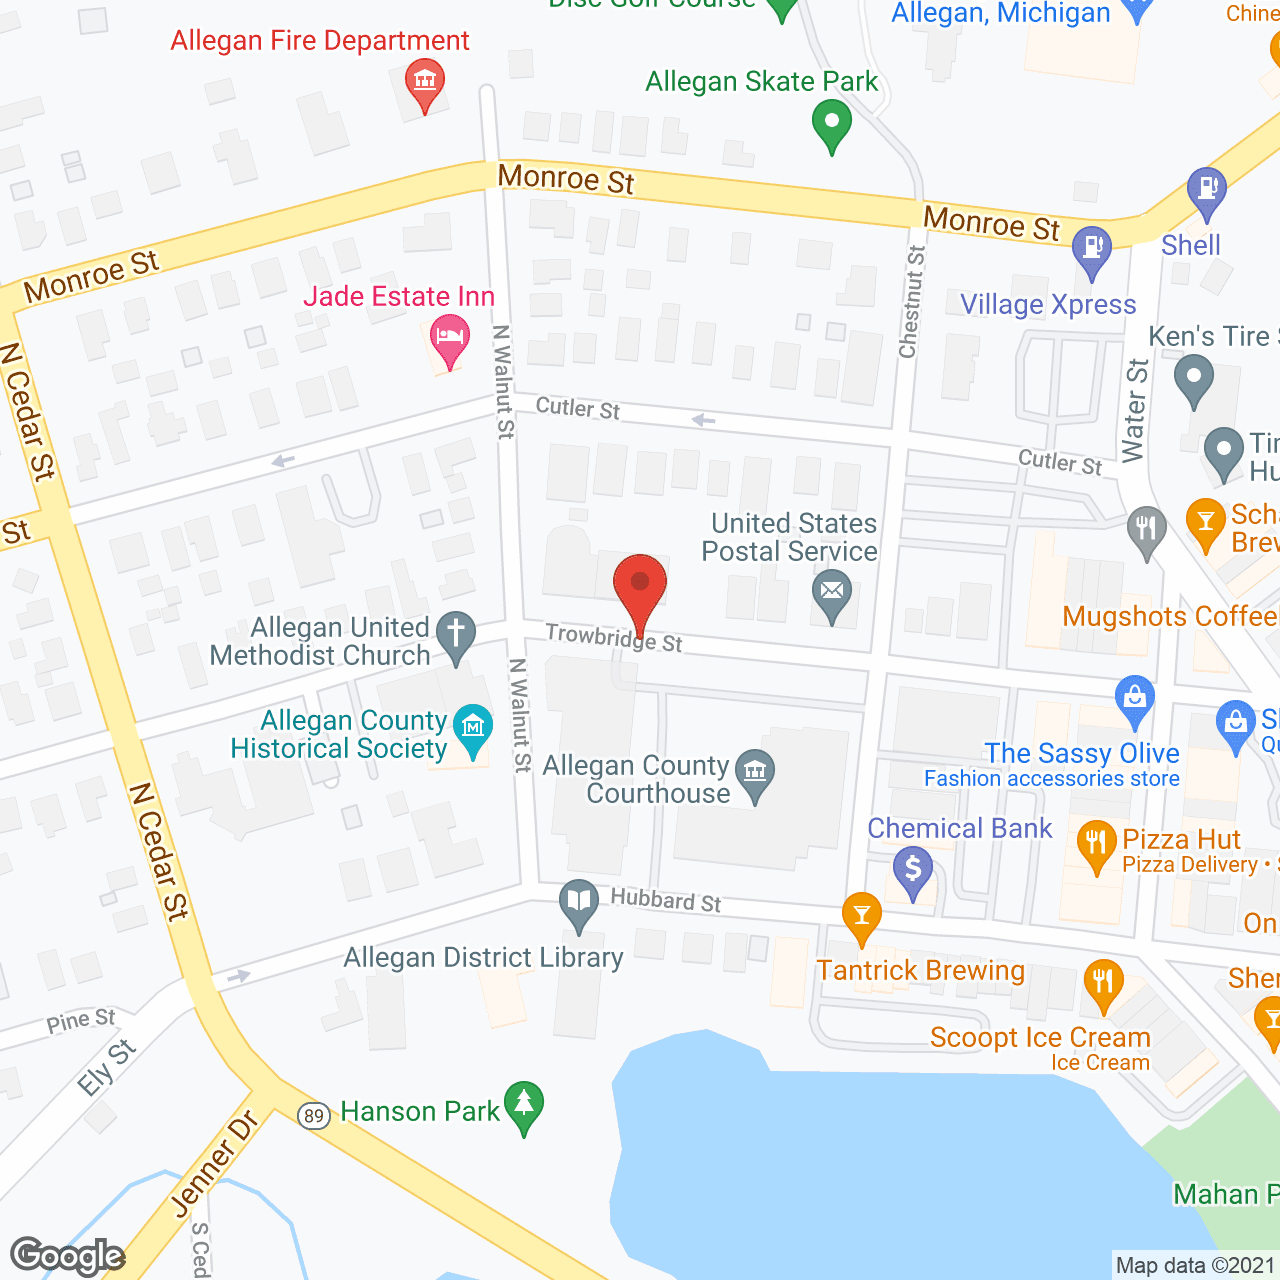 Allegan Senior Residences in google map